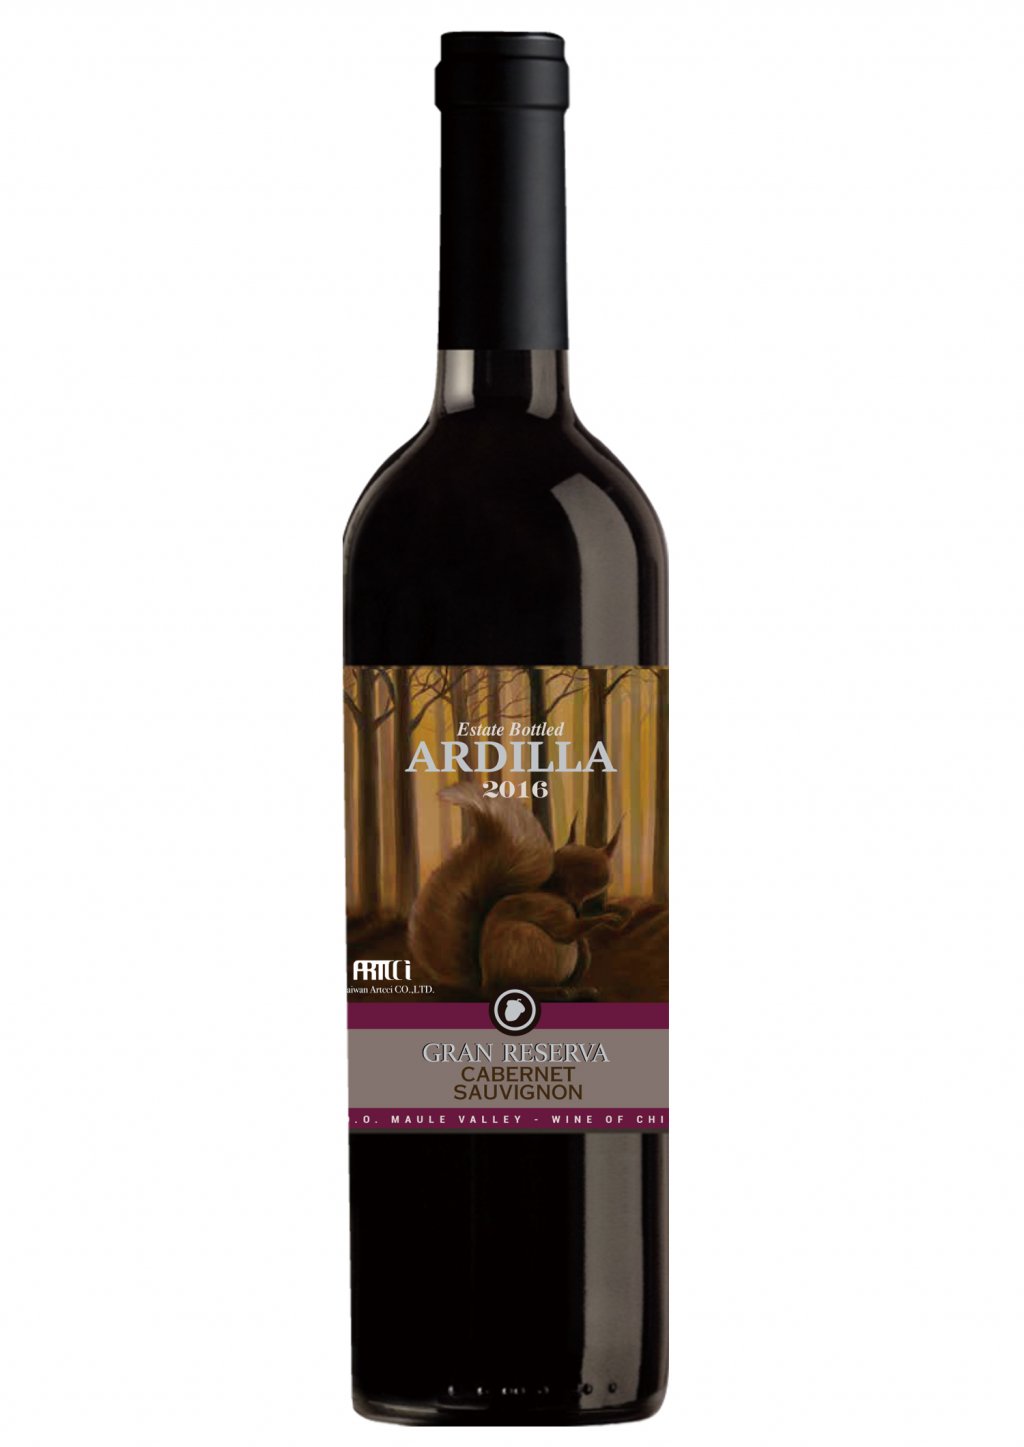 頂級松鼠藝術紅酒 -2016智利葡萄酒神之雫波爾多瓶